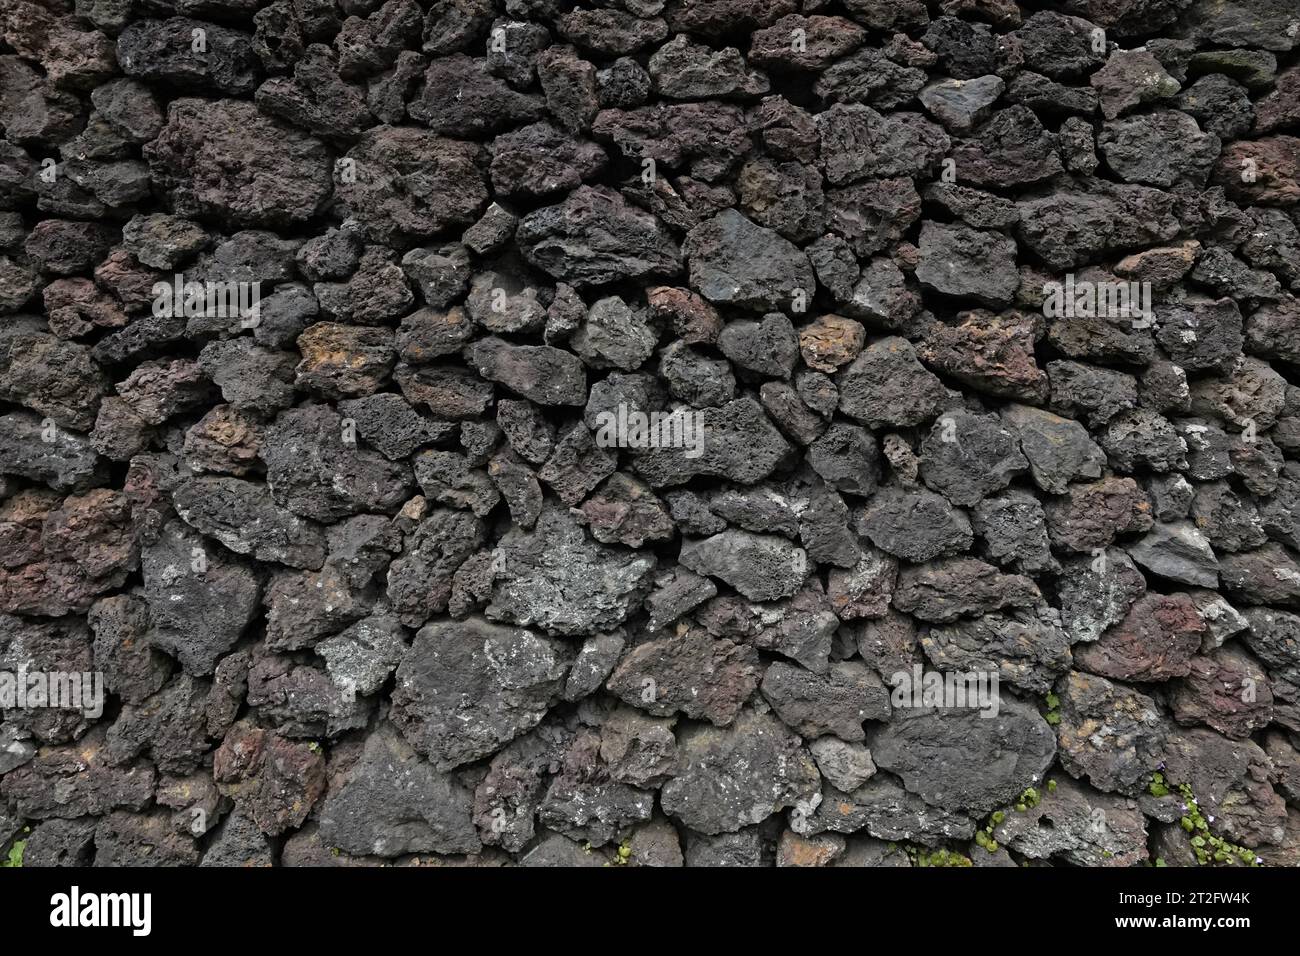 Un mur composé de roches ponces volcaniques sombres est montré dans un gros plan, vue extérieure pendant la journée. Banque D'Images